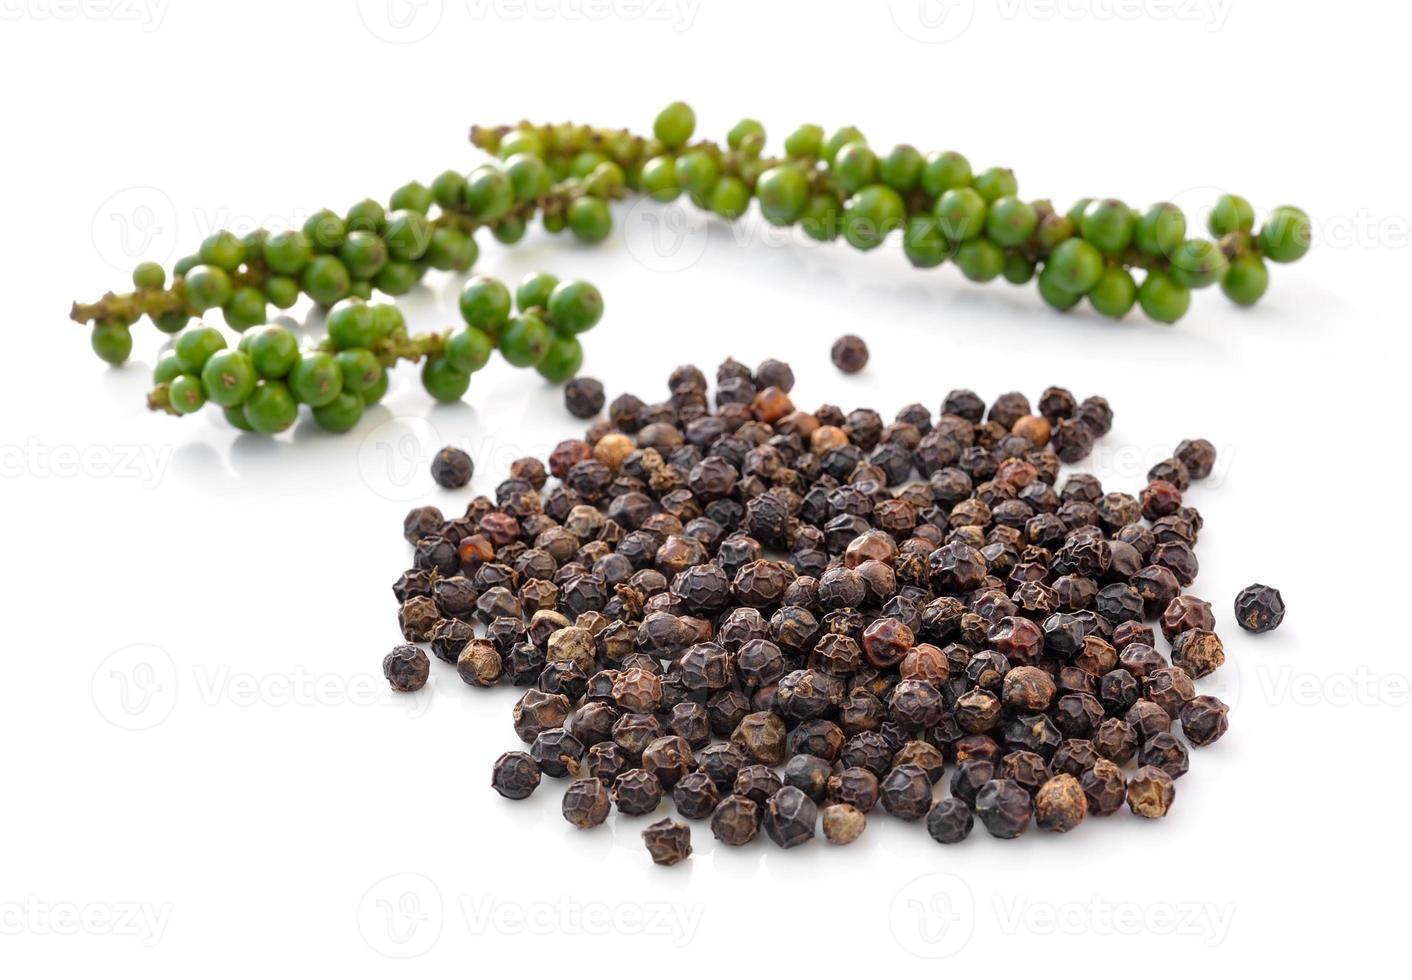 Zwarte peperkorrels en trossen verse groene peper geïsoleerd op een witte achtergrond foto